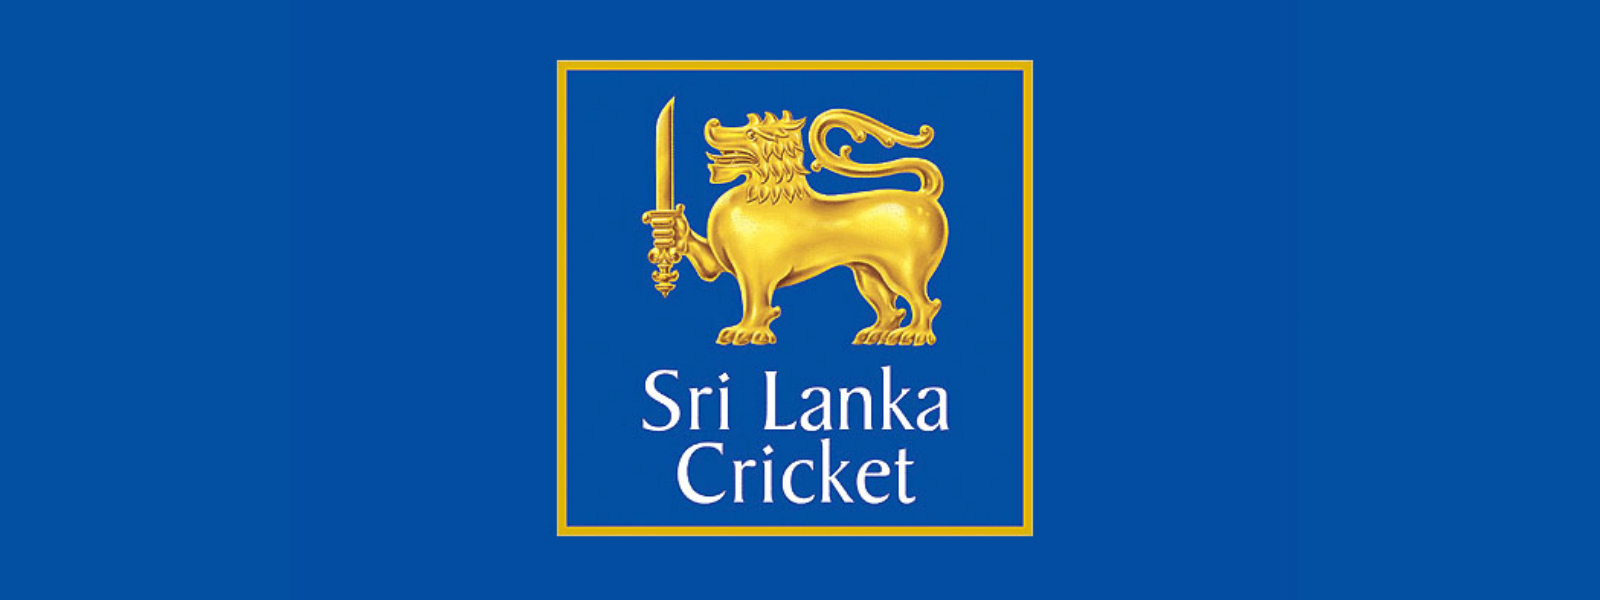 Annual Sri Lanka Cricket Awards held in Colombo